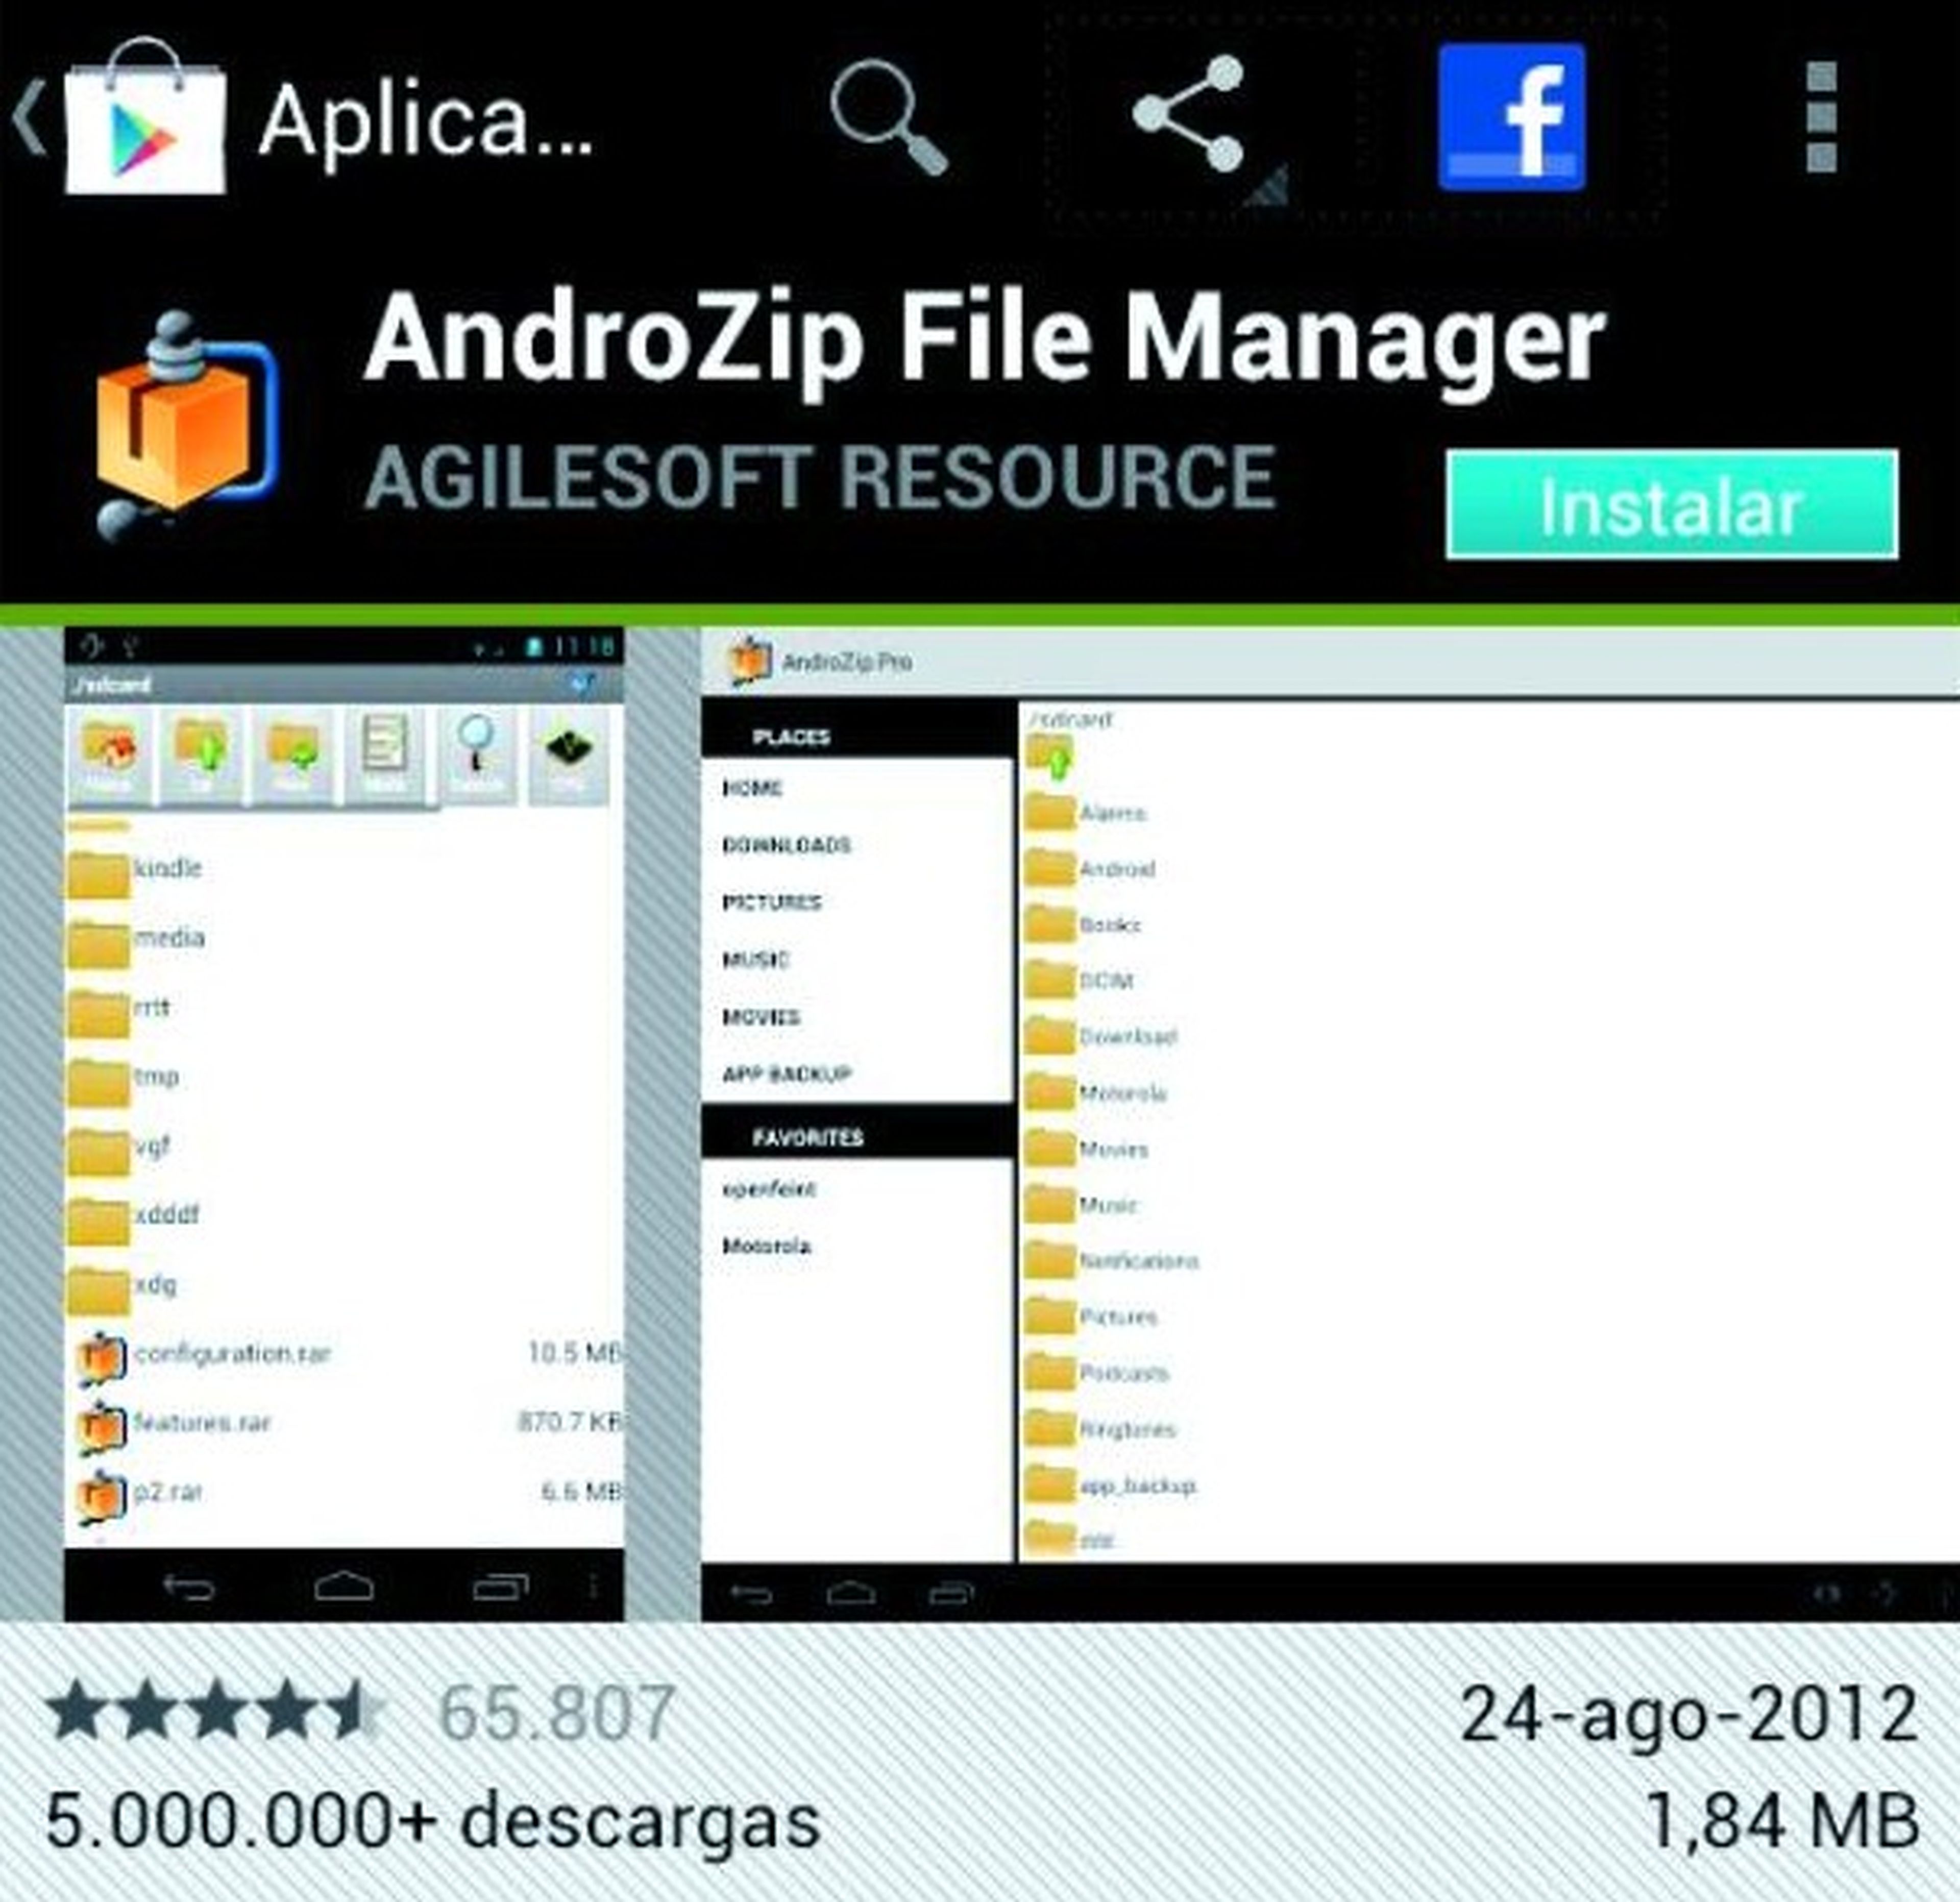 AndroZip File Manager es gratuito y está en Google Play